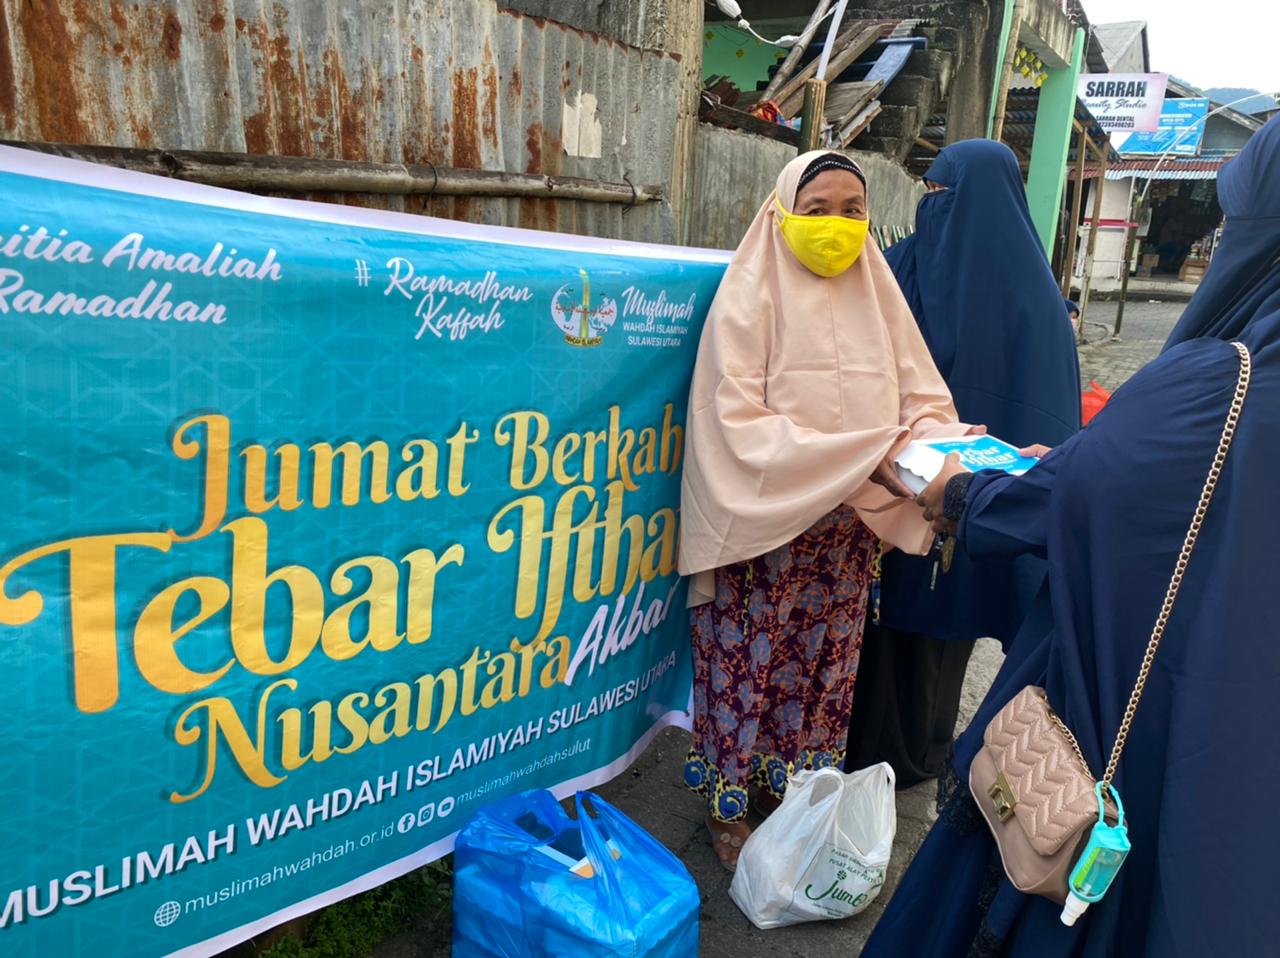 Bangkitkan Semangat Ramadhan Berbagi, Muslimah Wahdah Islamiyah Sulawesi Utara Tebar Ifthar di Kampung Muallaf